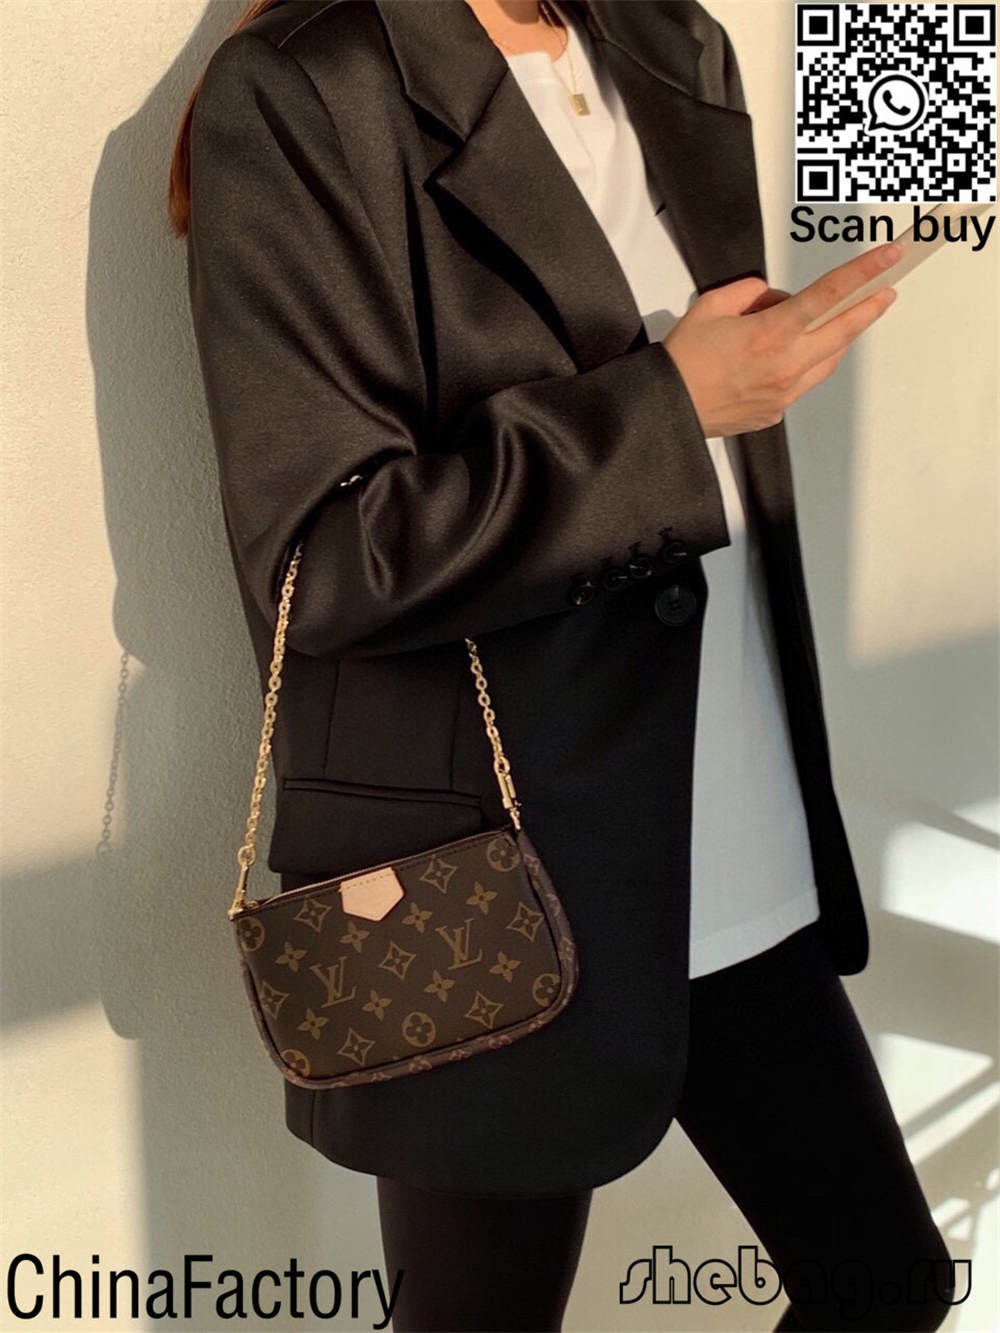 Come trovare borse replica su ebay? (Soluzioni 2022) - Negozio online di borse Louis Vuitton false di migliore qualità, replica designer bag ru